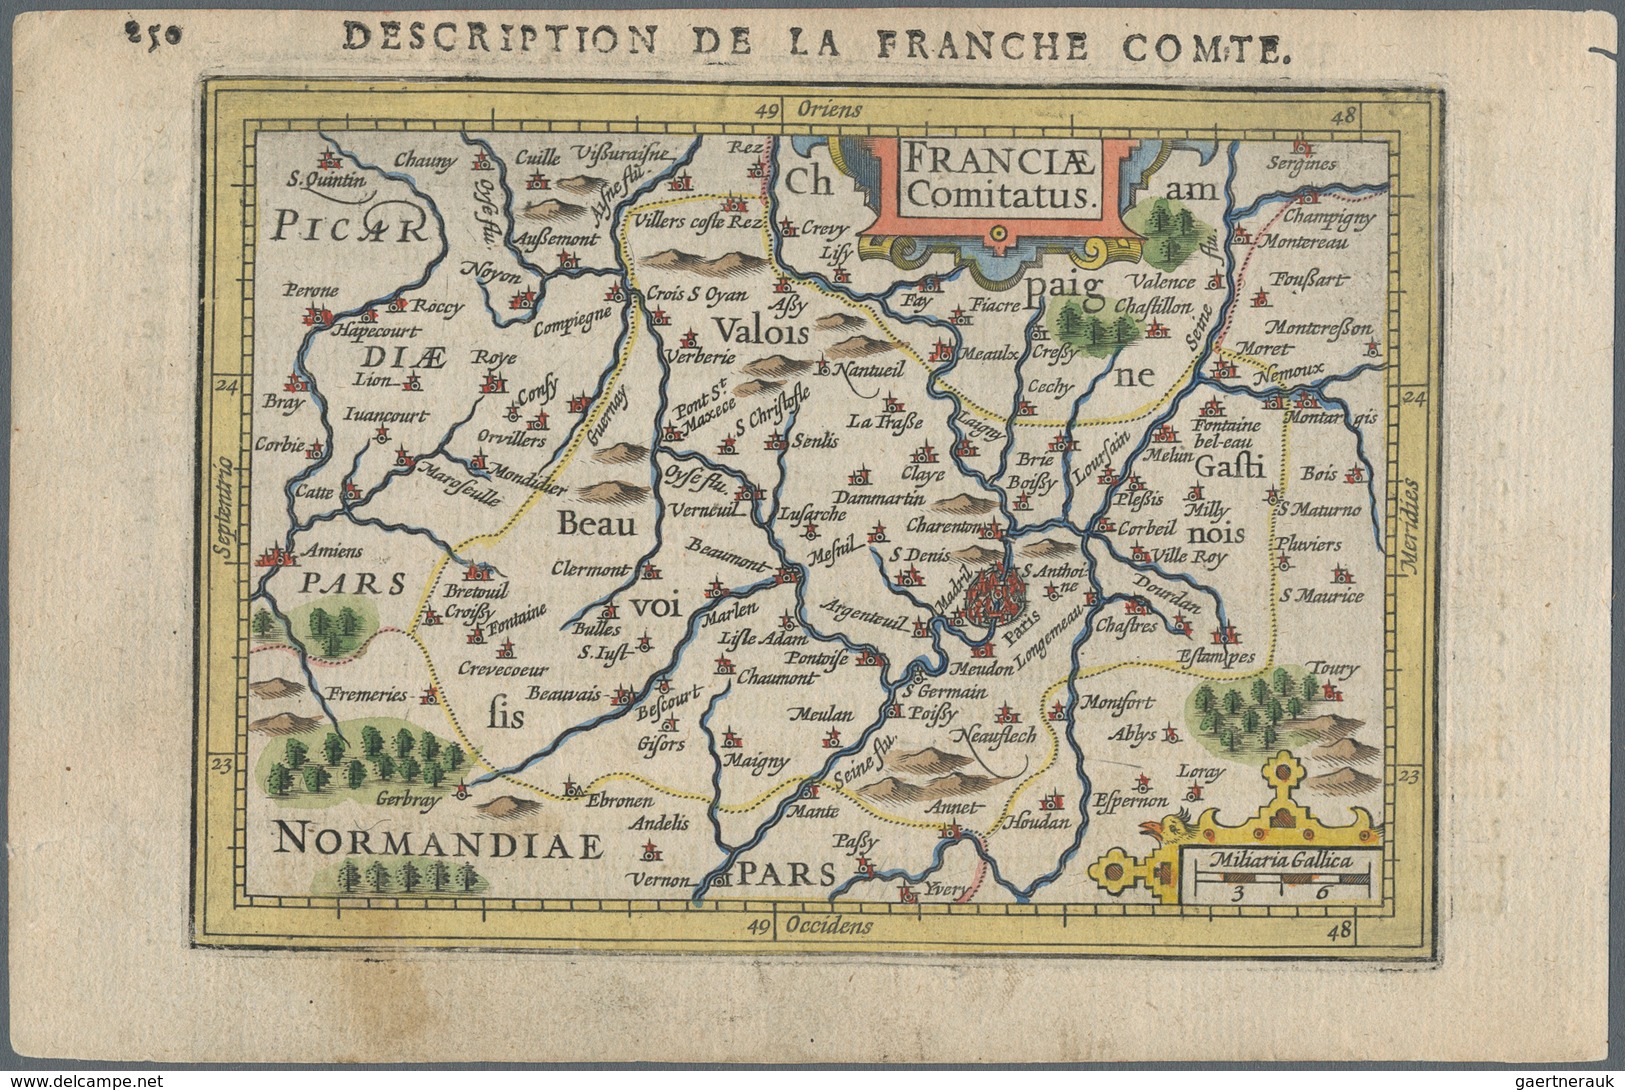 Landkarten Und Stiche: 1610. France Comitatus, Description De La Franche Comte. Attractive Small For - Geography